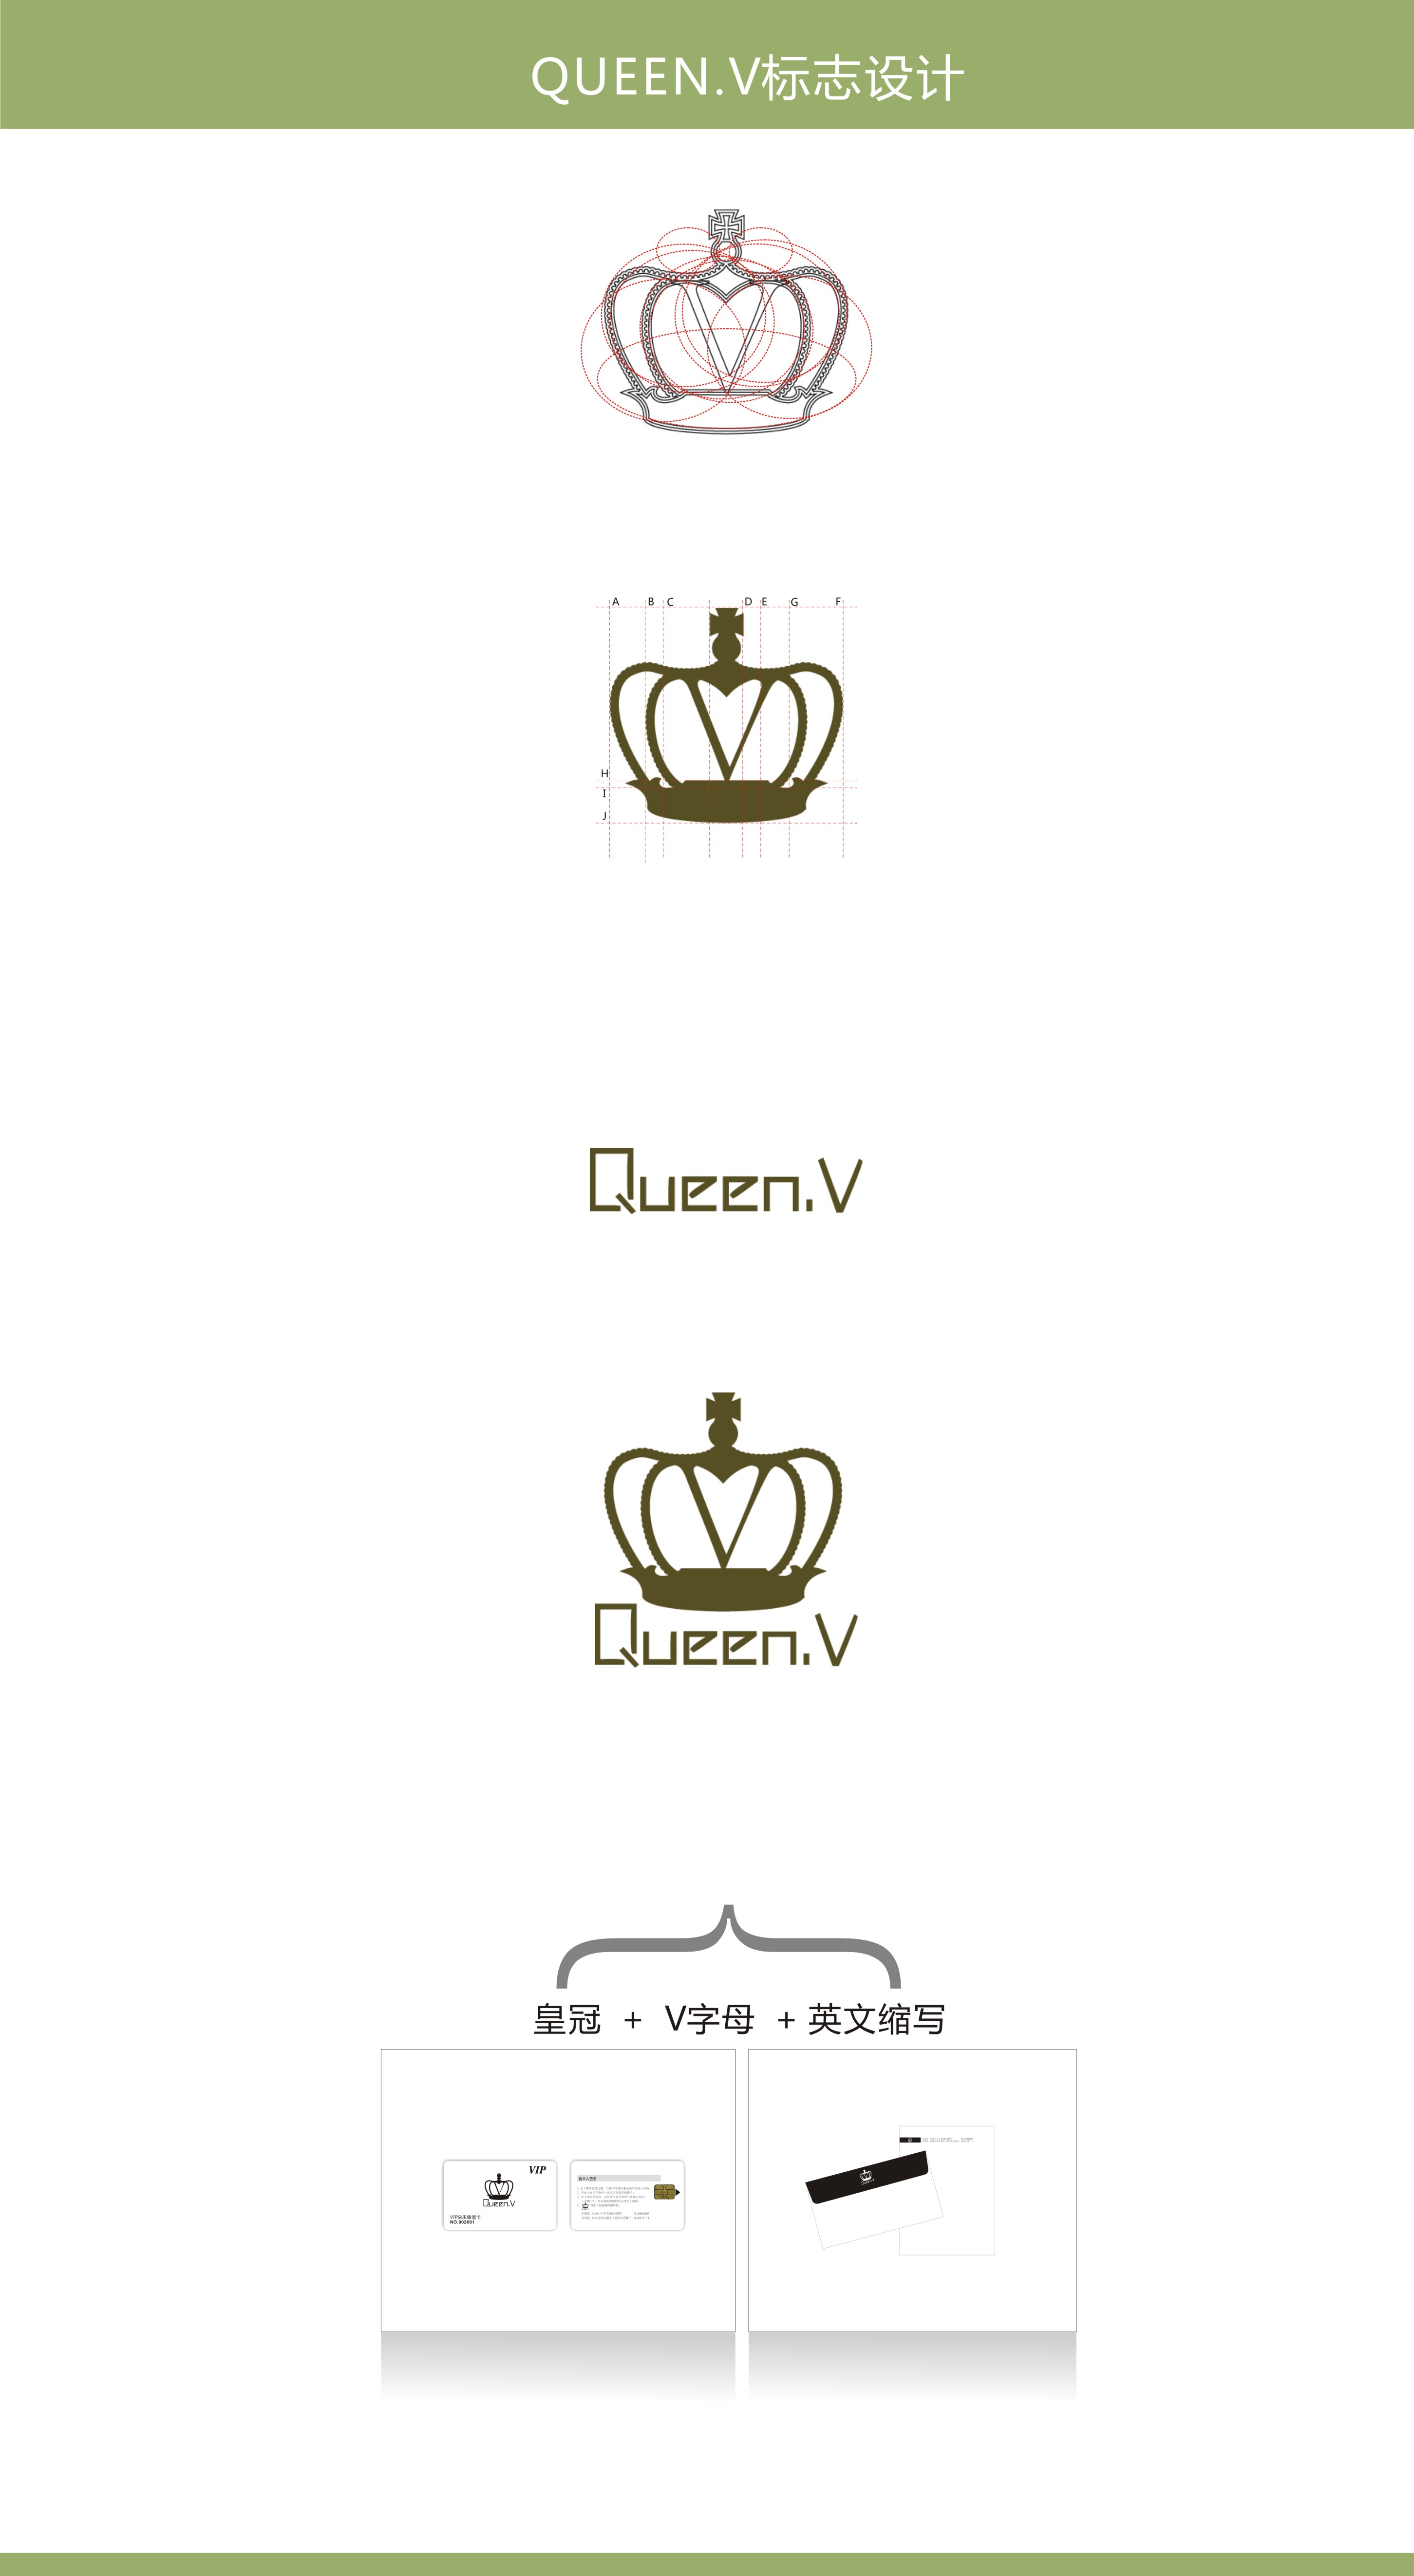 这是给queen.v服饰设计的logo